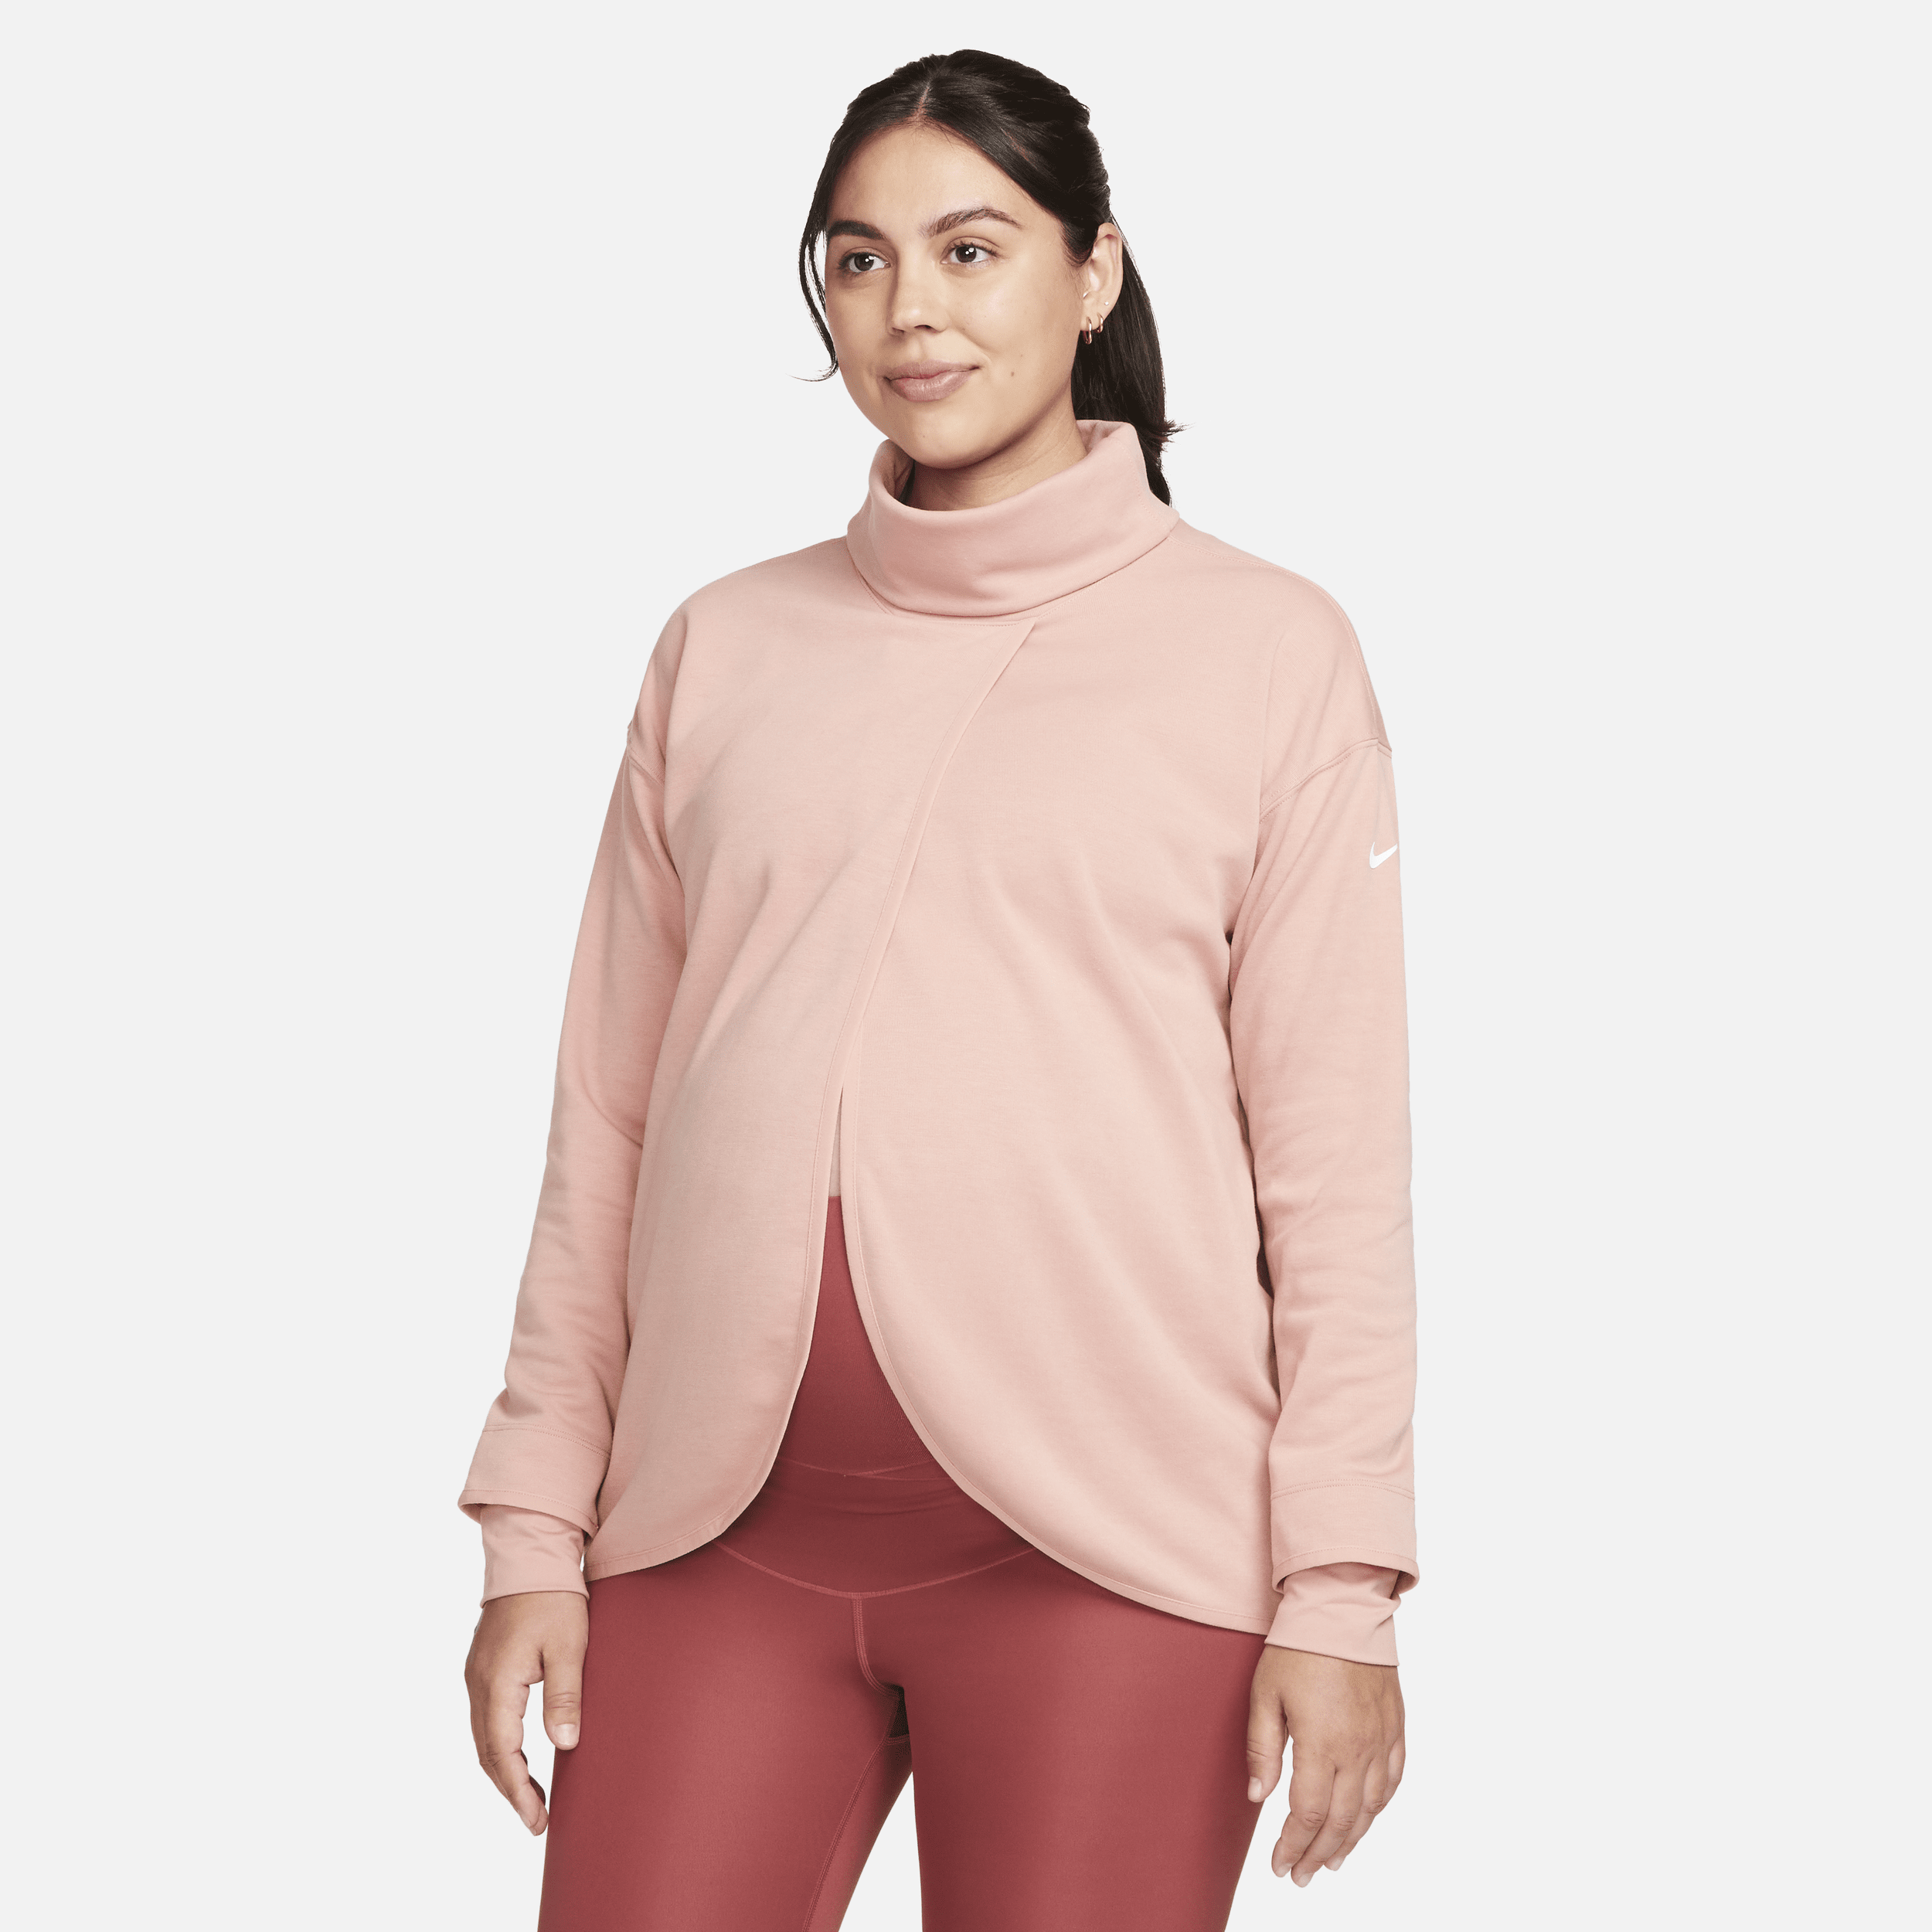 Blusão Nike Maternidade Feminino